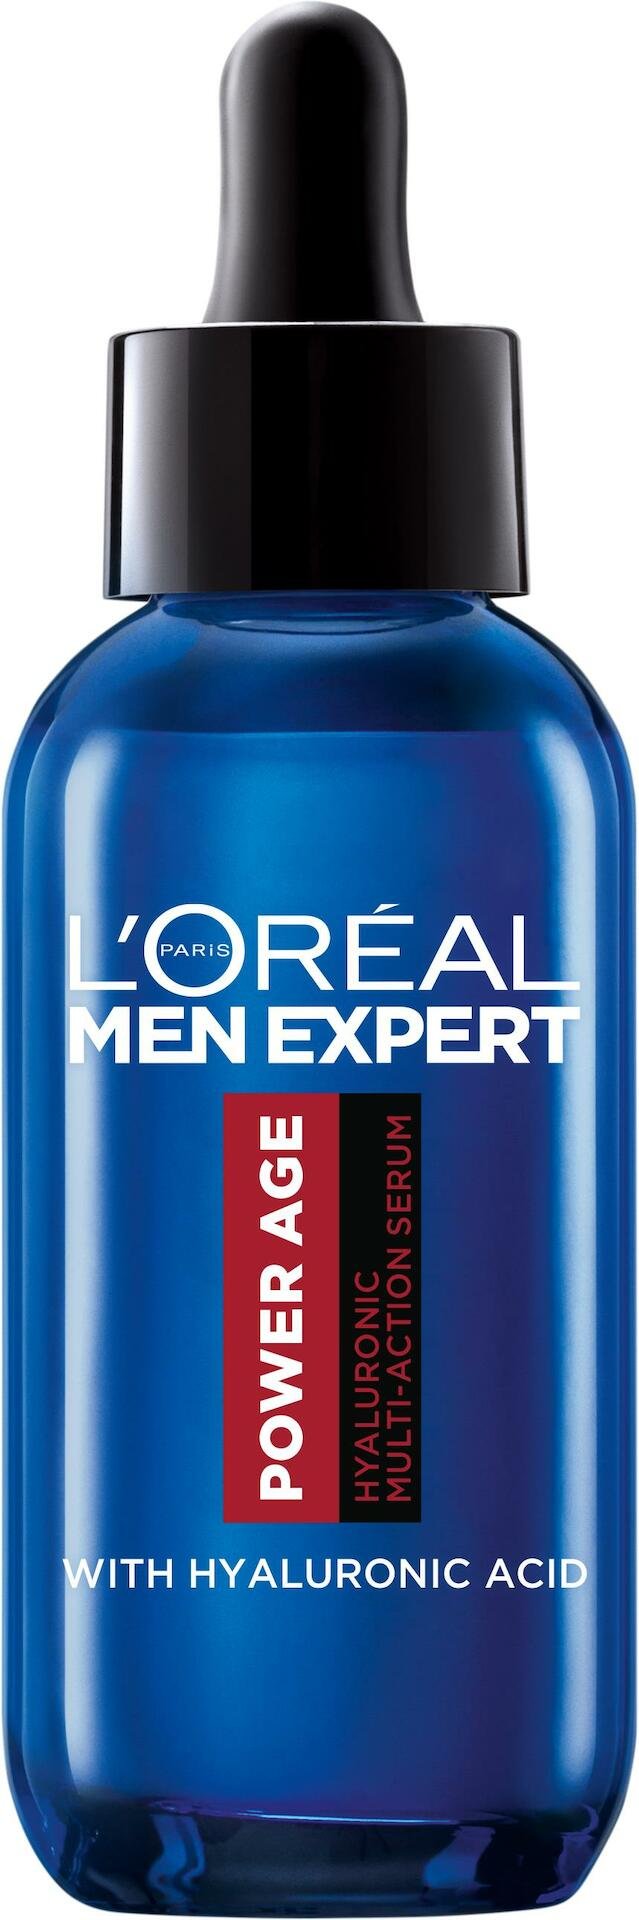 L'Oréal Paris Men Expert Power Age Hyaluronic Multi-Action Serum 30 ml